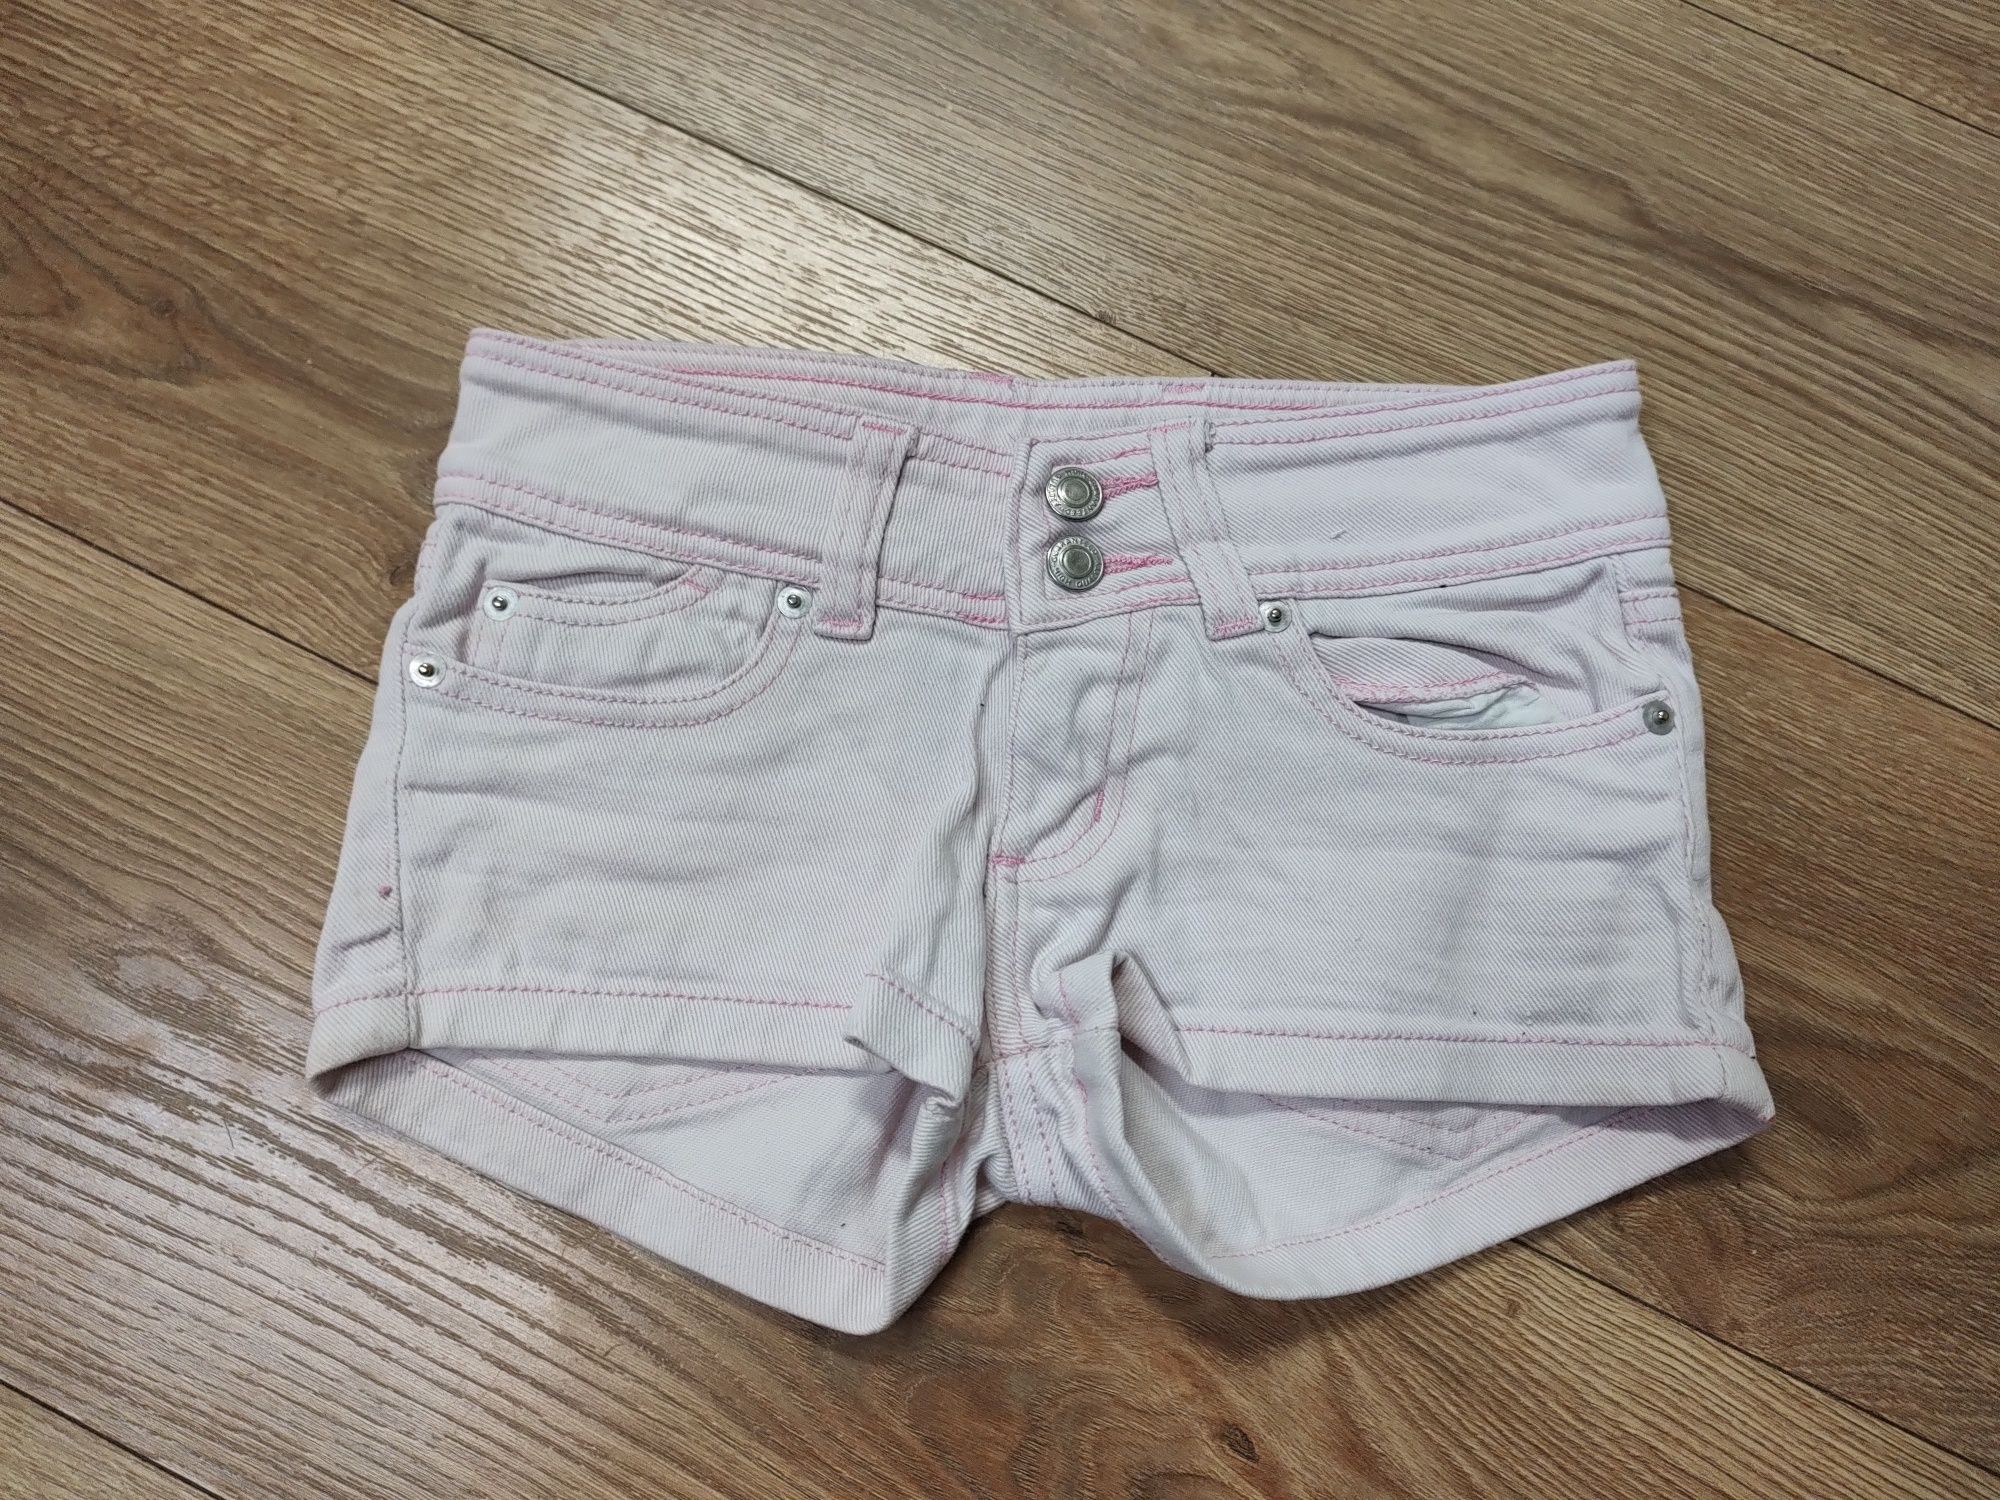 Różowe ładne krótkie spodenki jeansowe dla dziewczynki rozmiar 134

Za